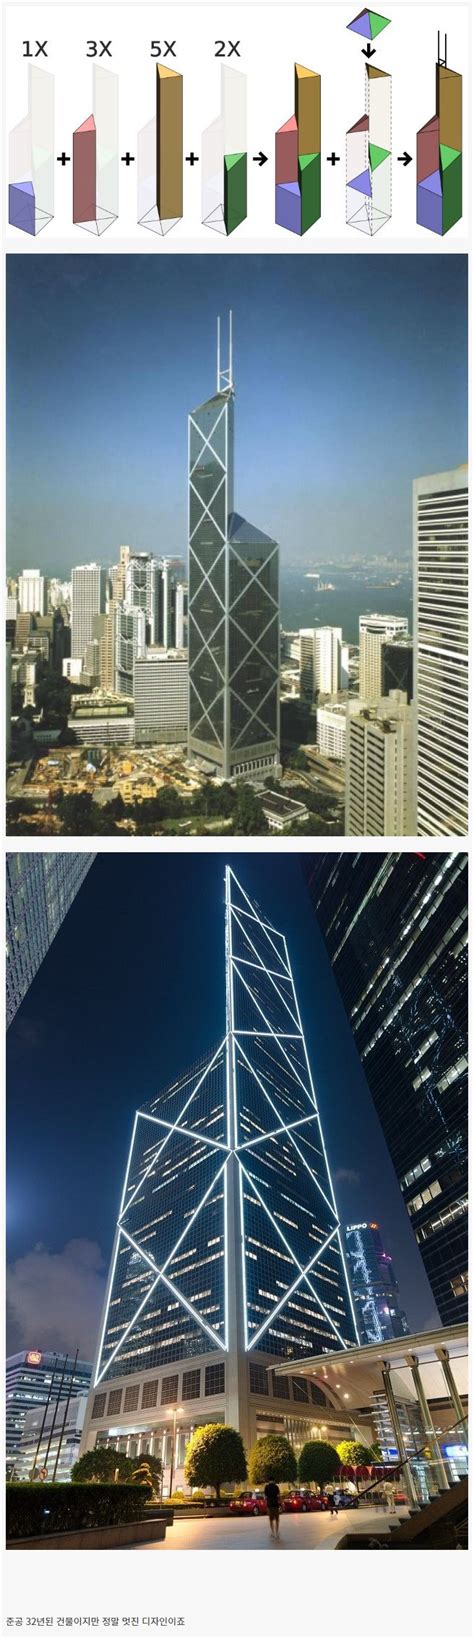 홍콩의 랜드마크 중국은행 타워